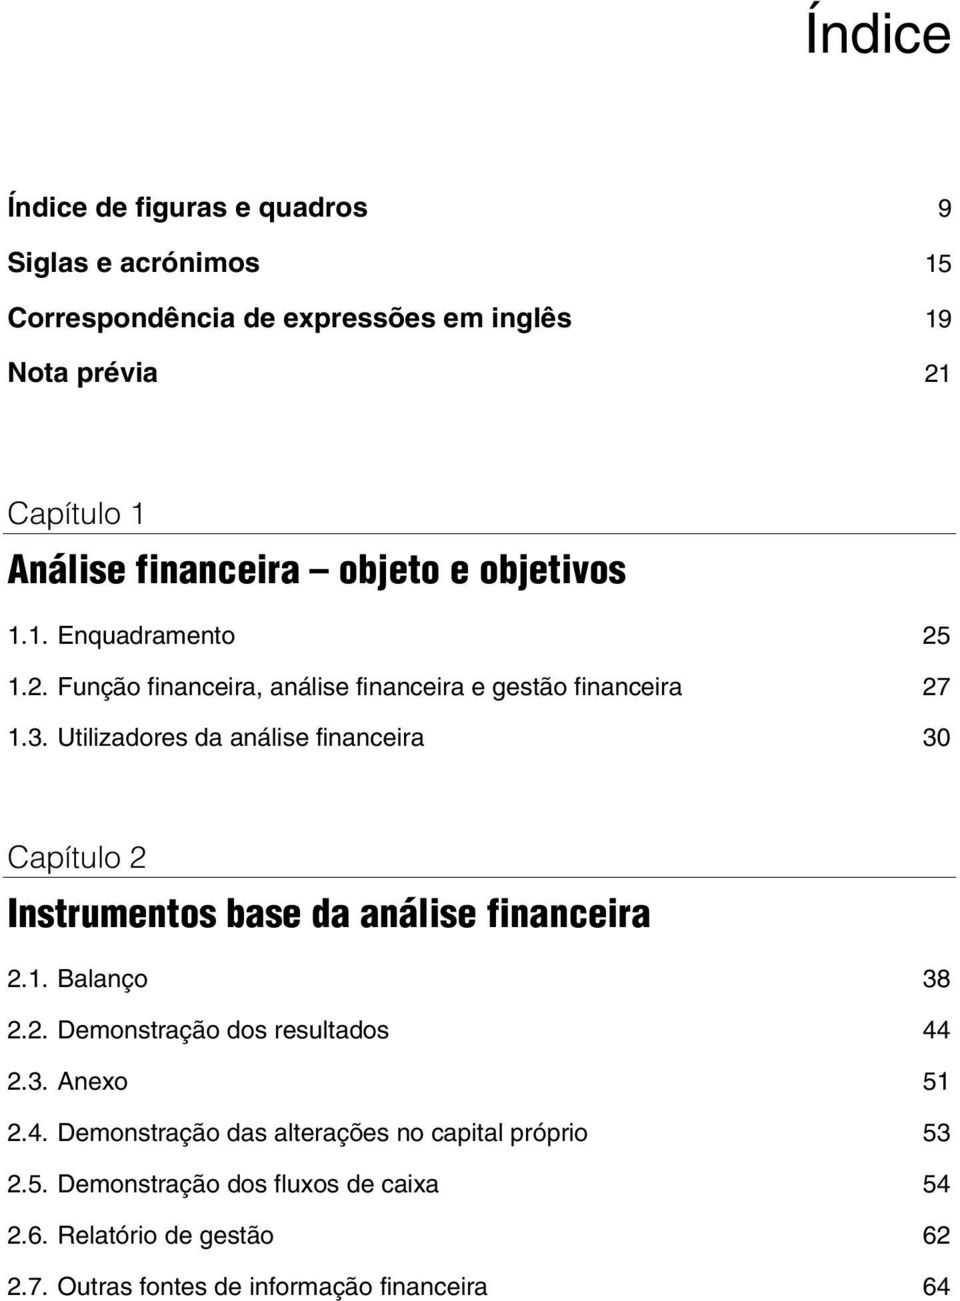 Utilizadores da análise financeira 30 Capítulo 2 Instrumentos base da análise financeira 2.1. Balanço 38 2.2. Demonstração dos resultados 44 2.3. Anexo 51 2.